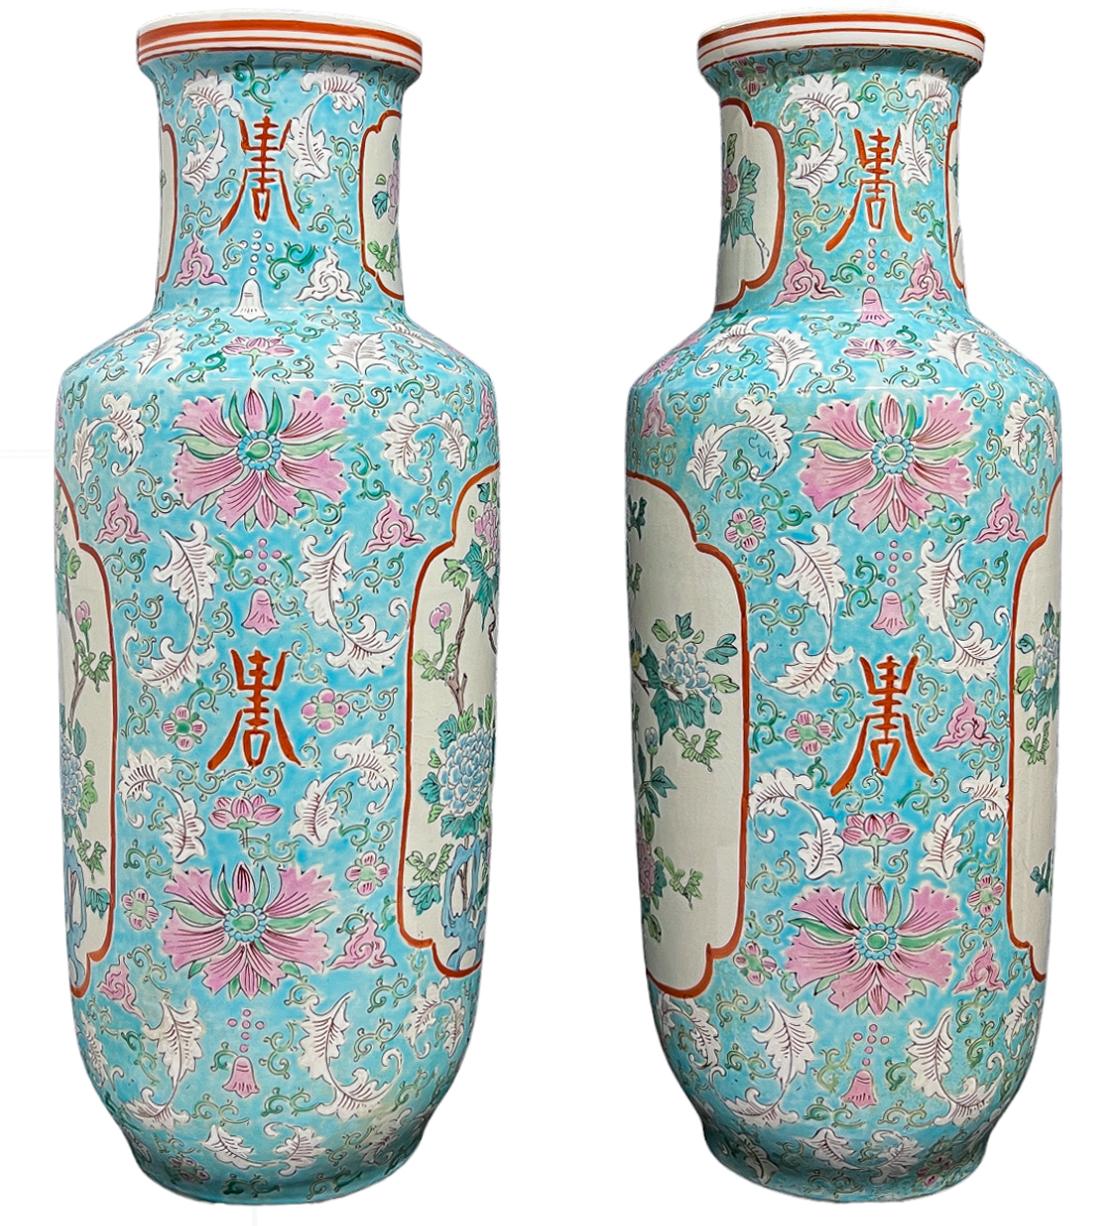 Un fabuleux ensemble de grands vases à images en porcelaine chinoise bleu layette. Un petit canari bleu et jaune est perché sur un petit buisson d'hortensias bleus et roses. La composition centrale est entourée de ce bleu clair de rêve, de fleurs